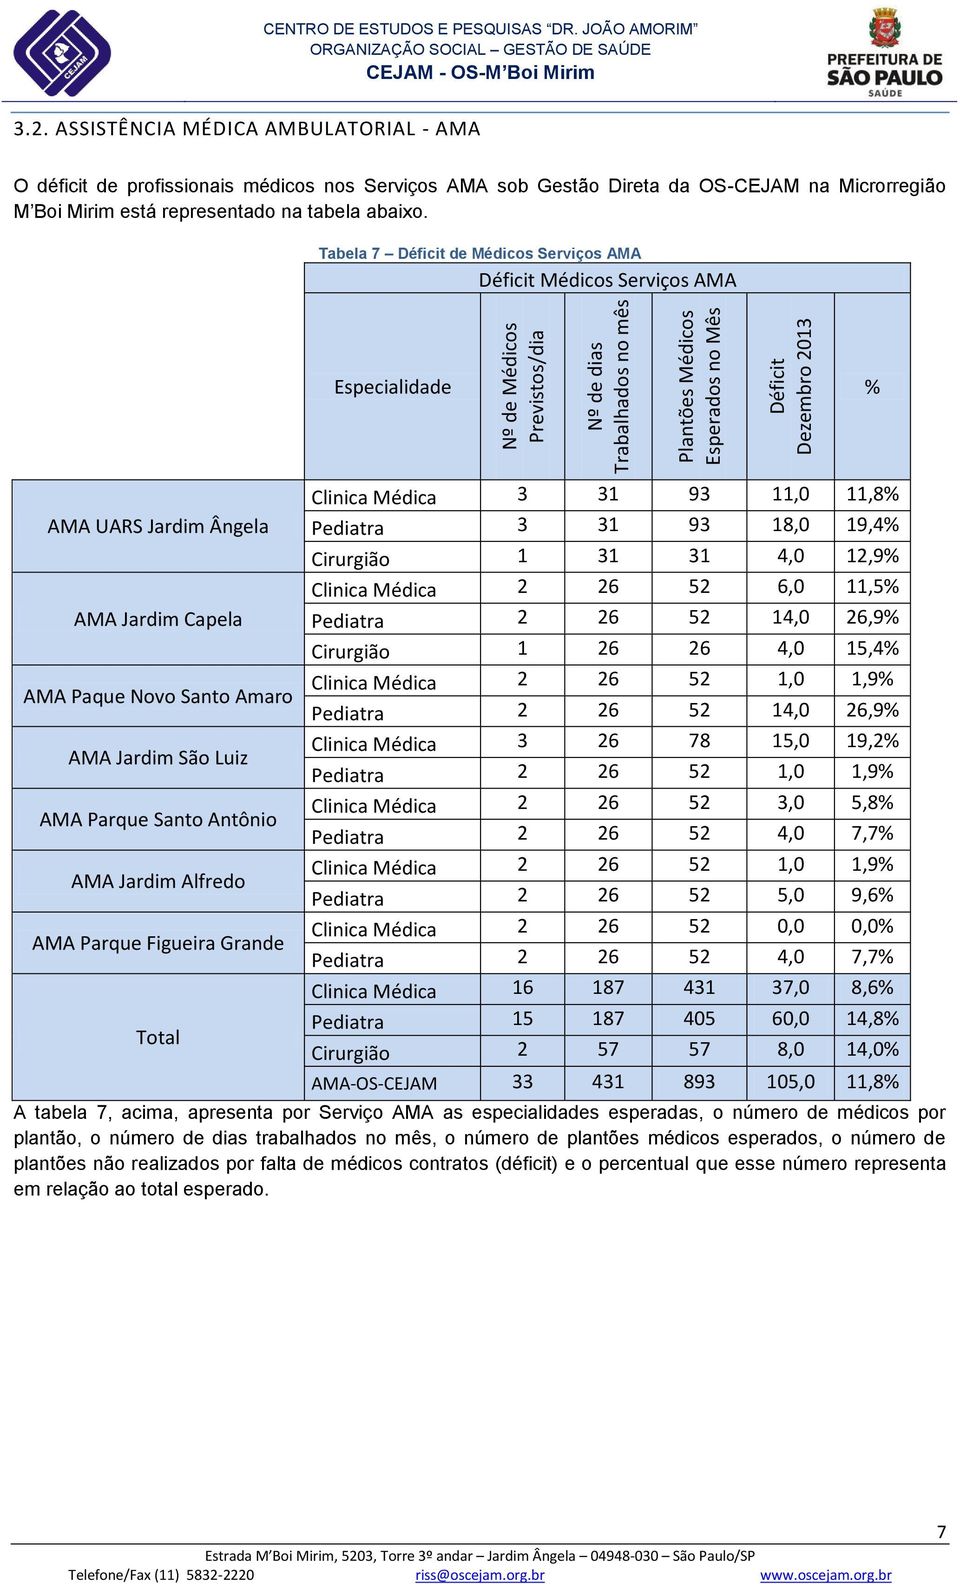 ASSISTÊNCIA MÉDICA AMBULATORIAL - AMA O déficit de profissionais médicos nos Serviços AMA sob Gestão Direta da OS-CEJAM na Microrregião M Boi Mirim está representado na tabela abaixo.